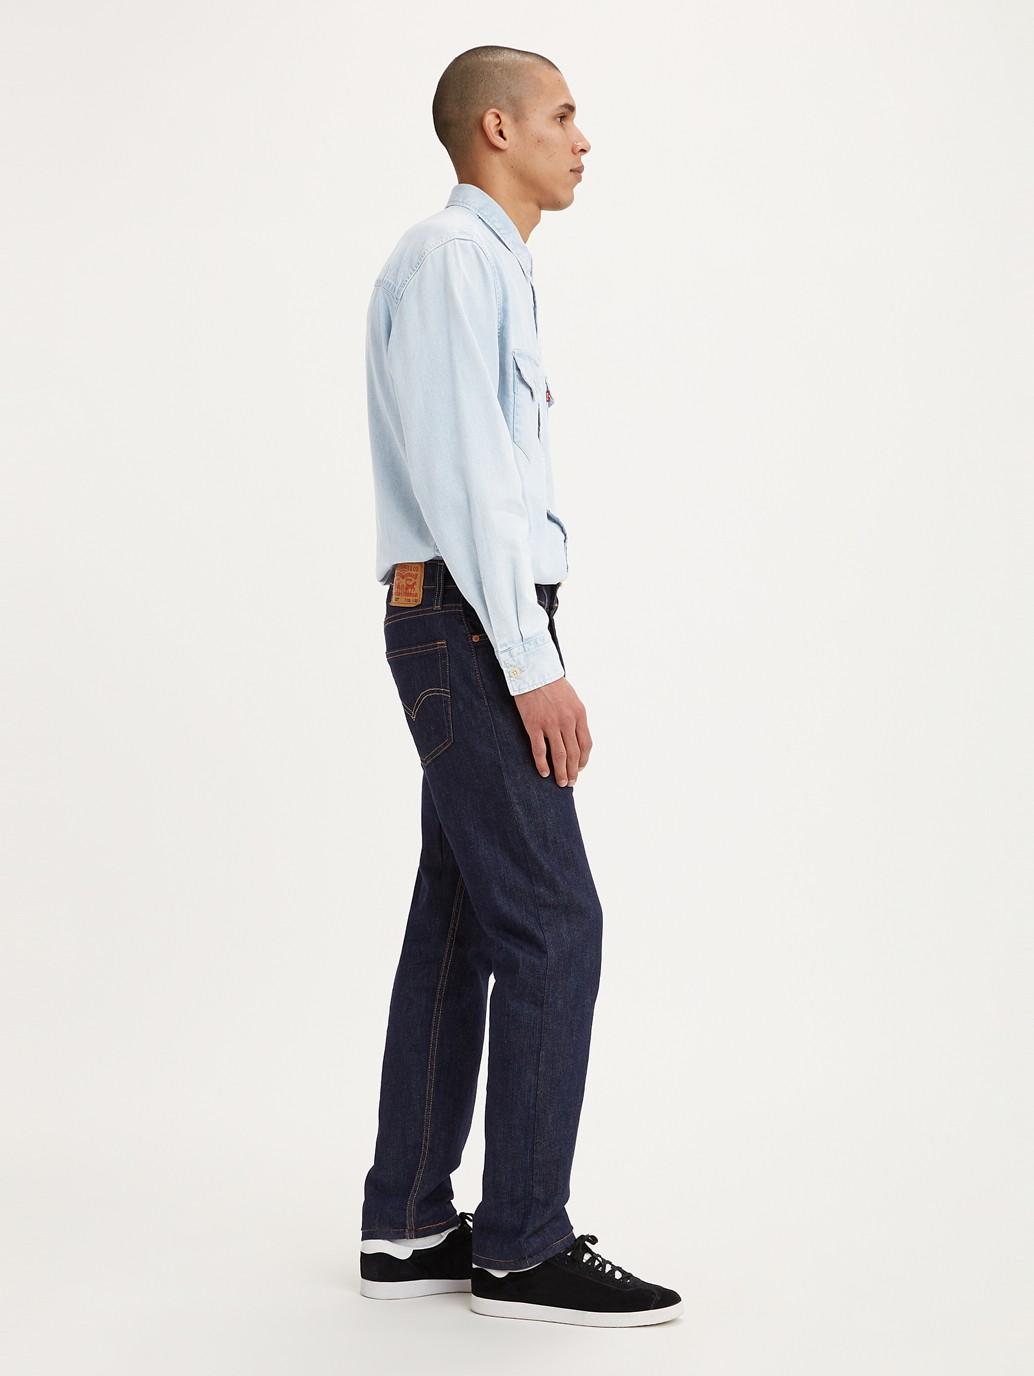 Buy Levi's® Men's 502™ Taper Fit Jeans | Levi's® Official Online Store SG